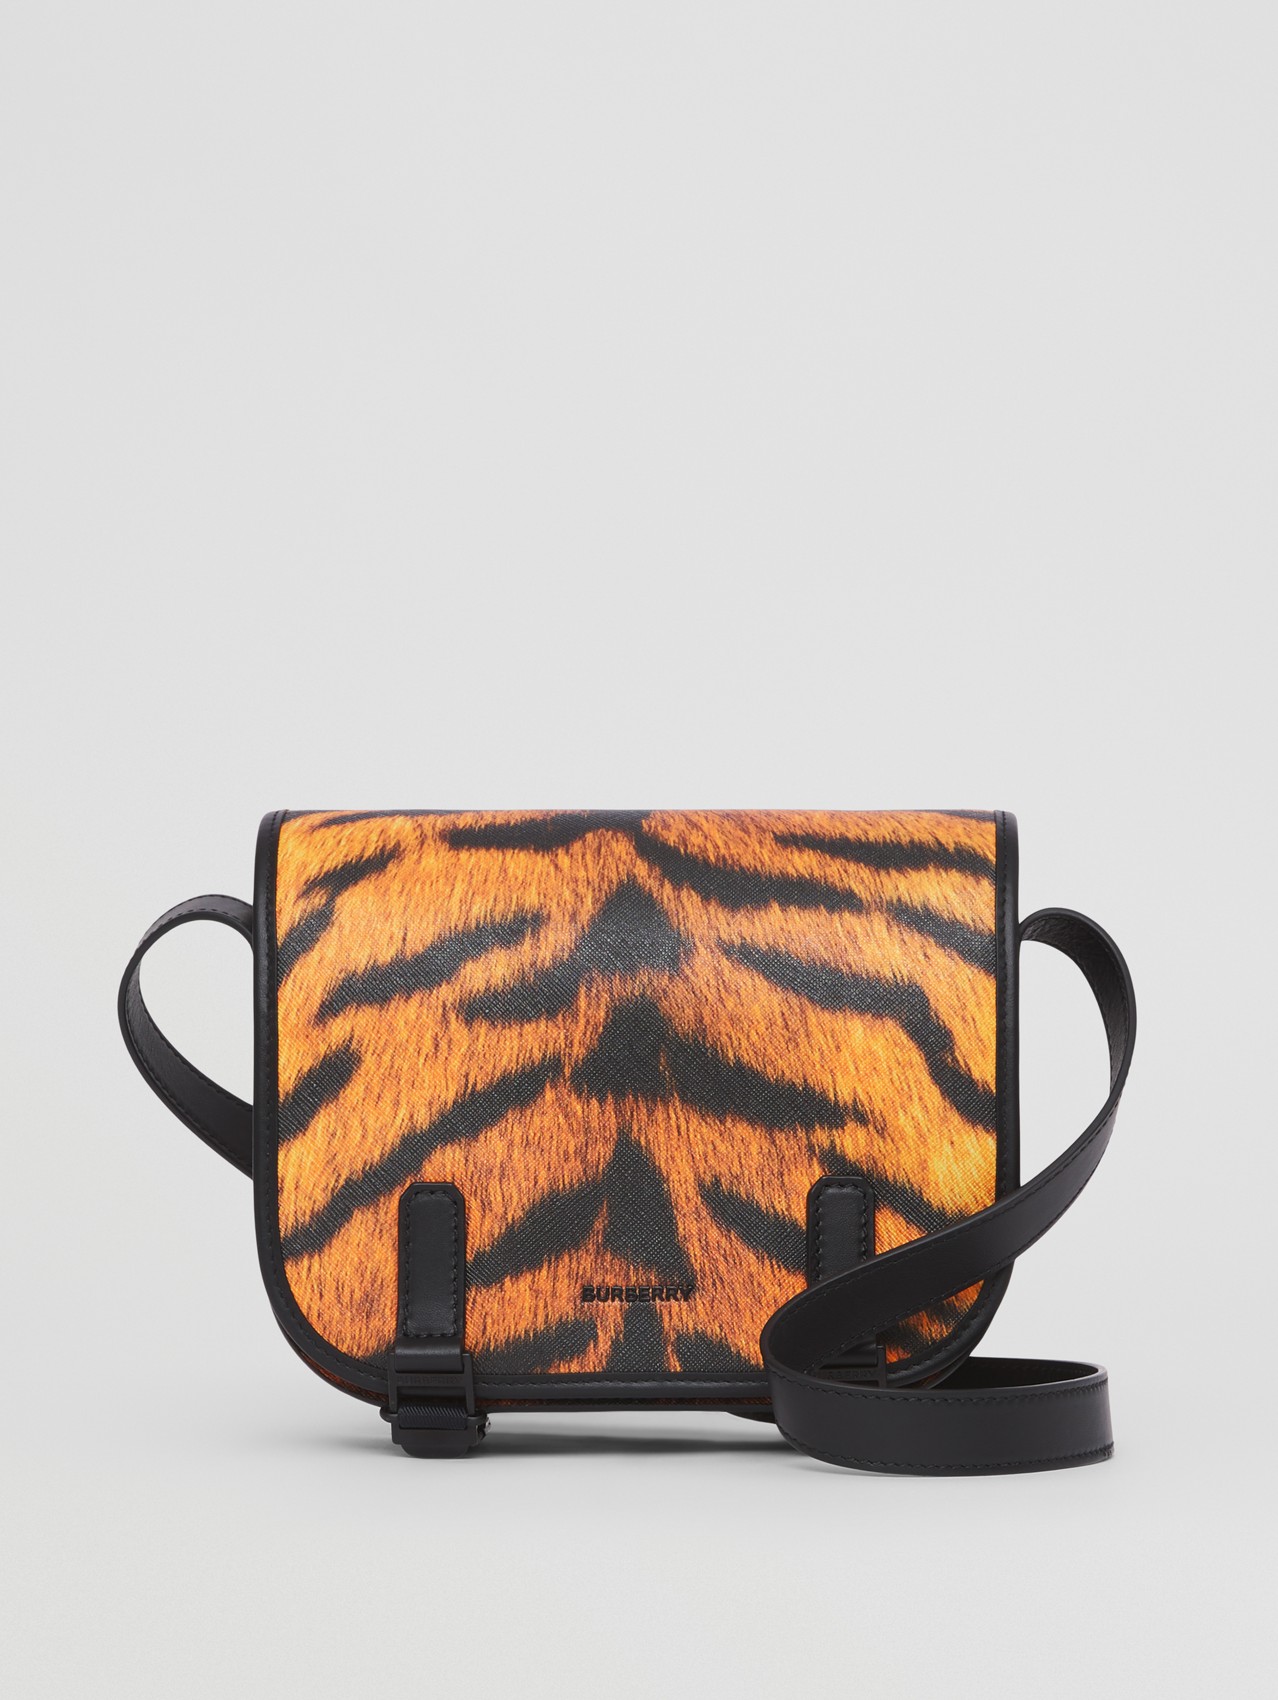 Messenger-Tasche mit Tigerfellmuster (Schwarz/orange)